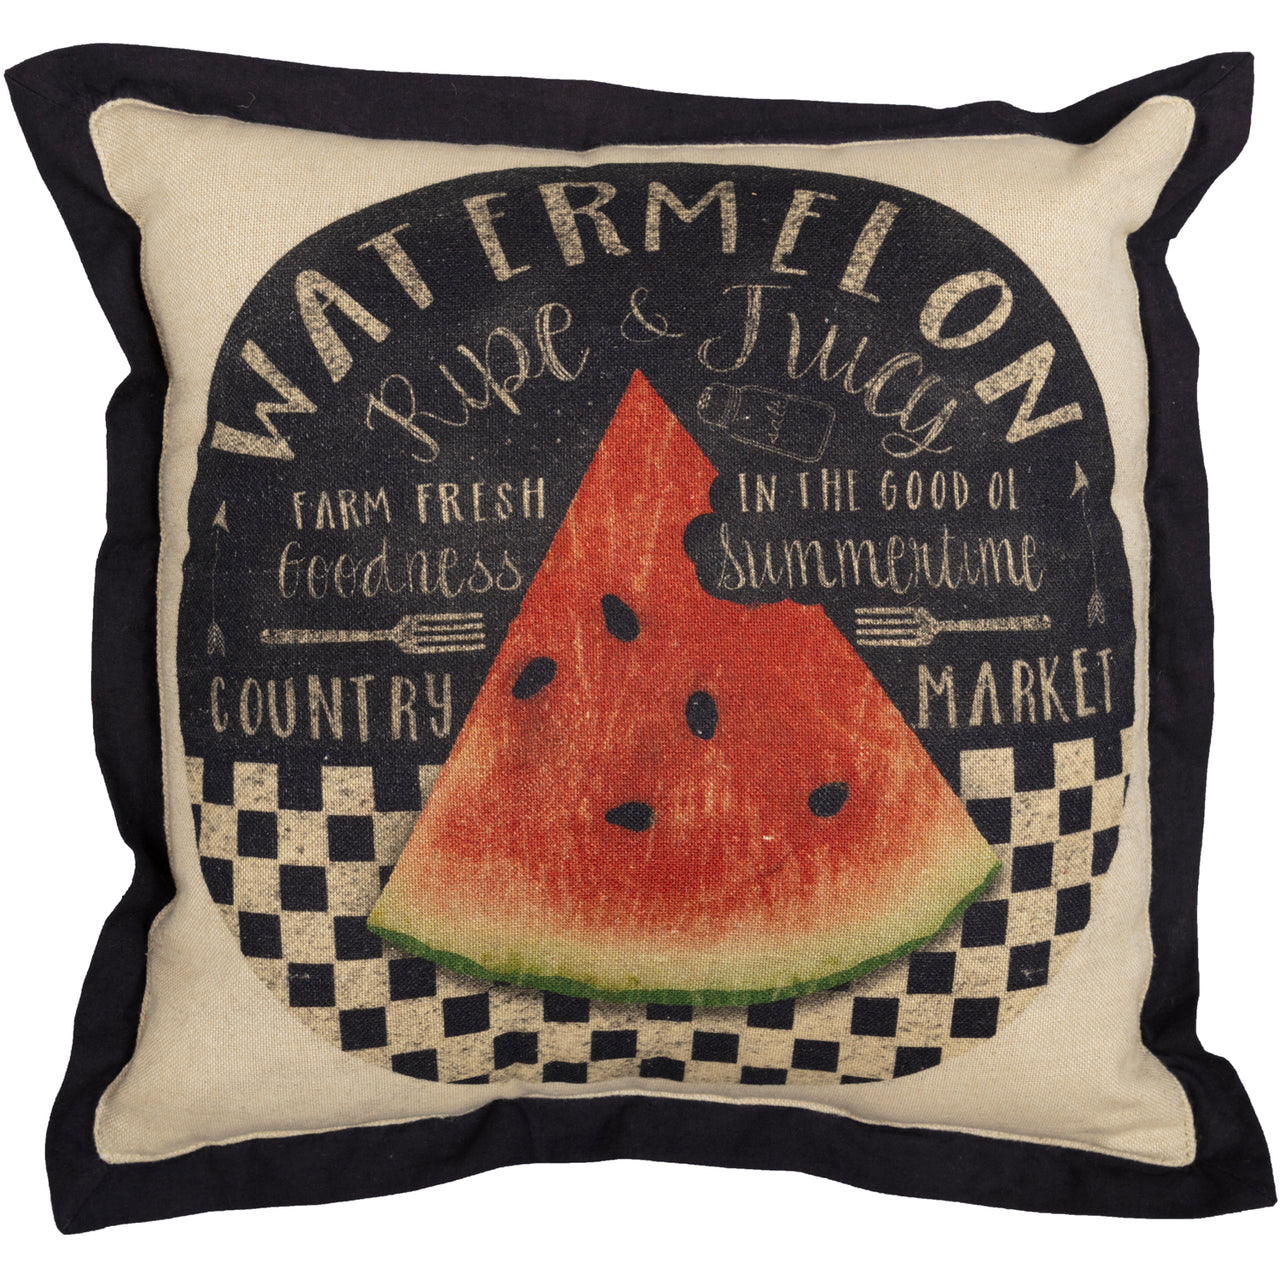 Farmer's Market Fresh Watermelon Pillow 12x12 VHC Brands